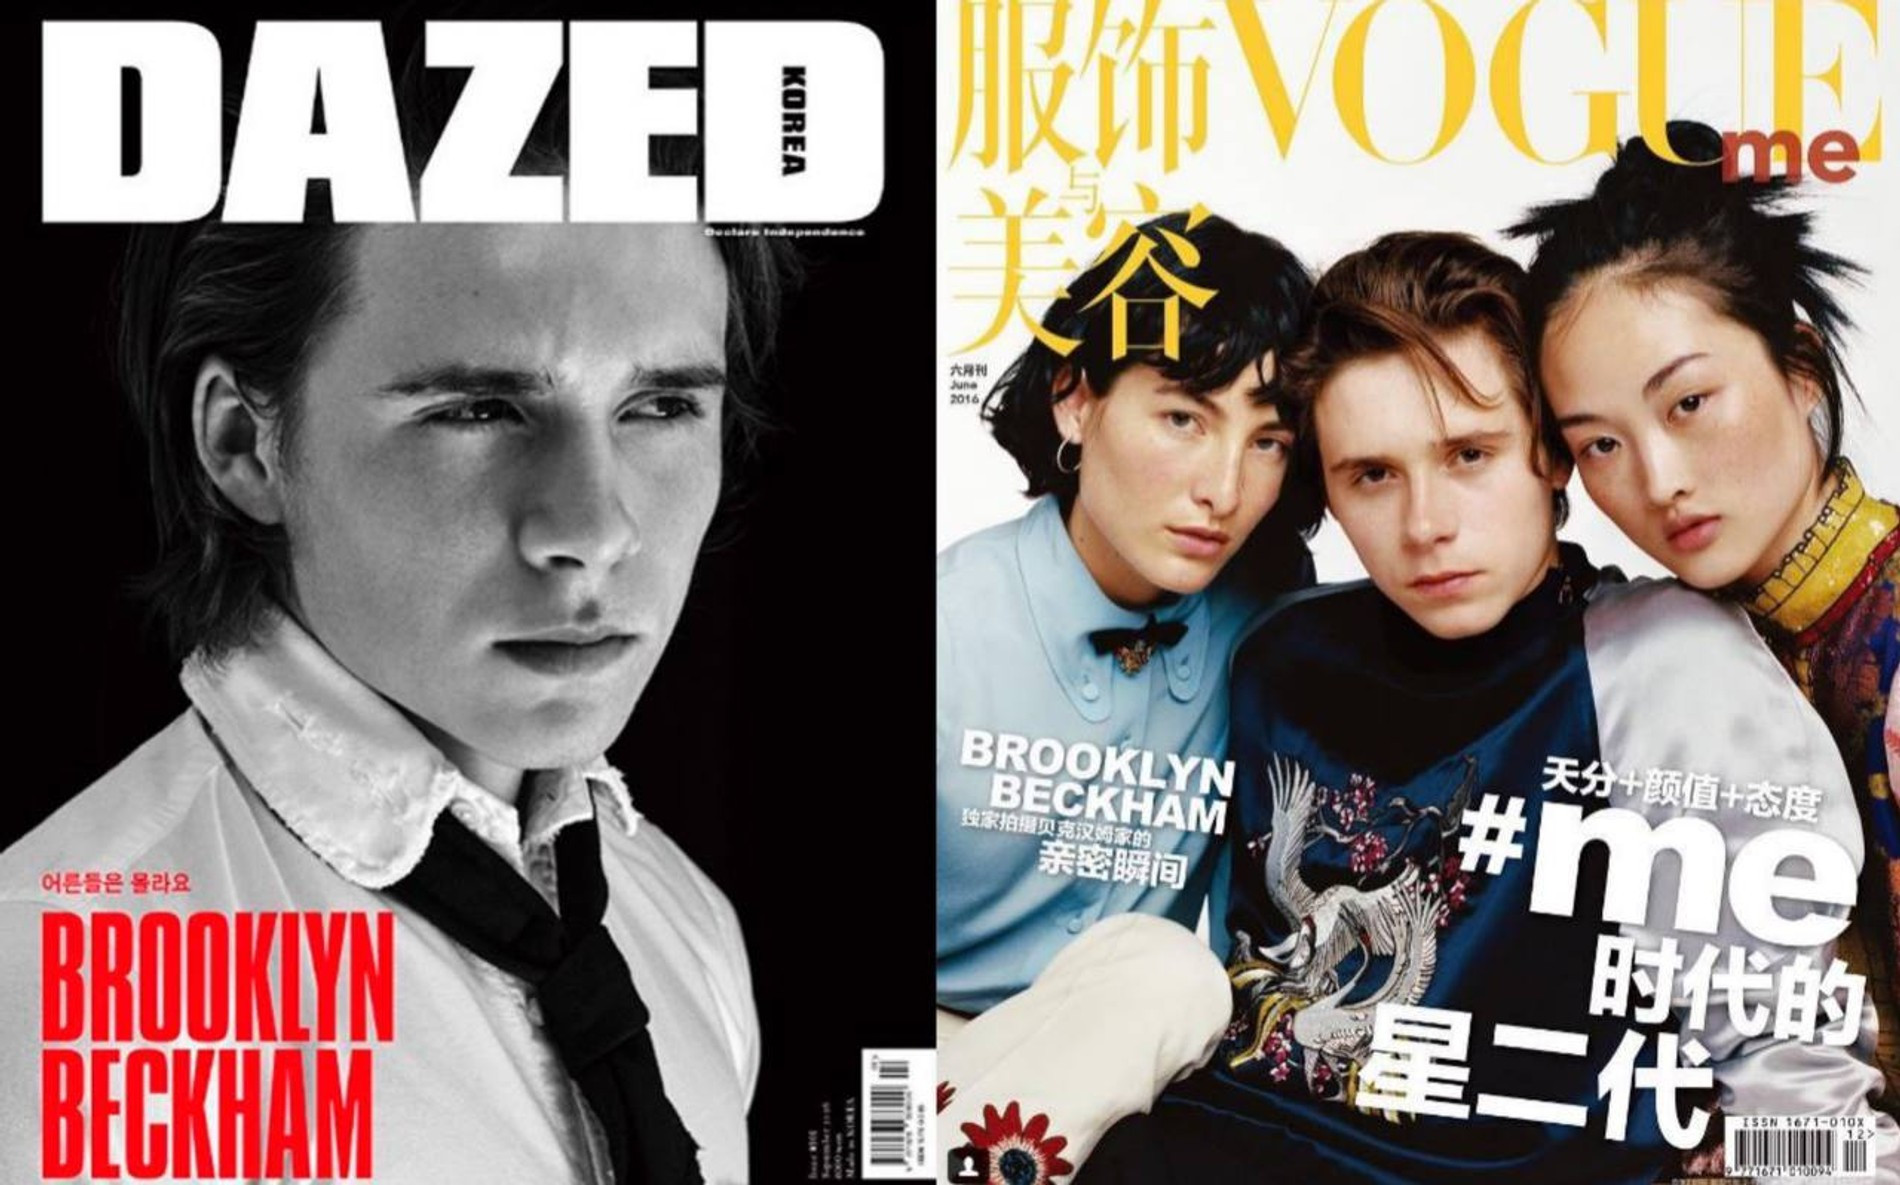 Обложки корейского Dazed & Confused и китайского Vogue
Фото: Instagram (запрещен на территории РФ) Бруклина Бекхэма